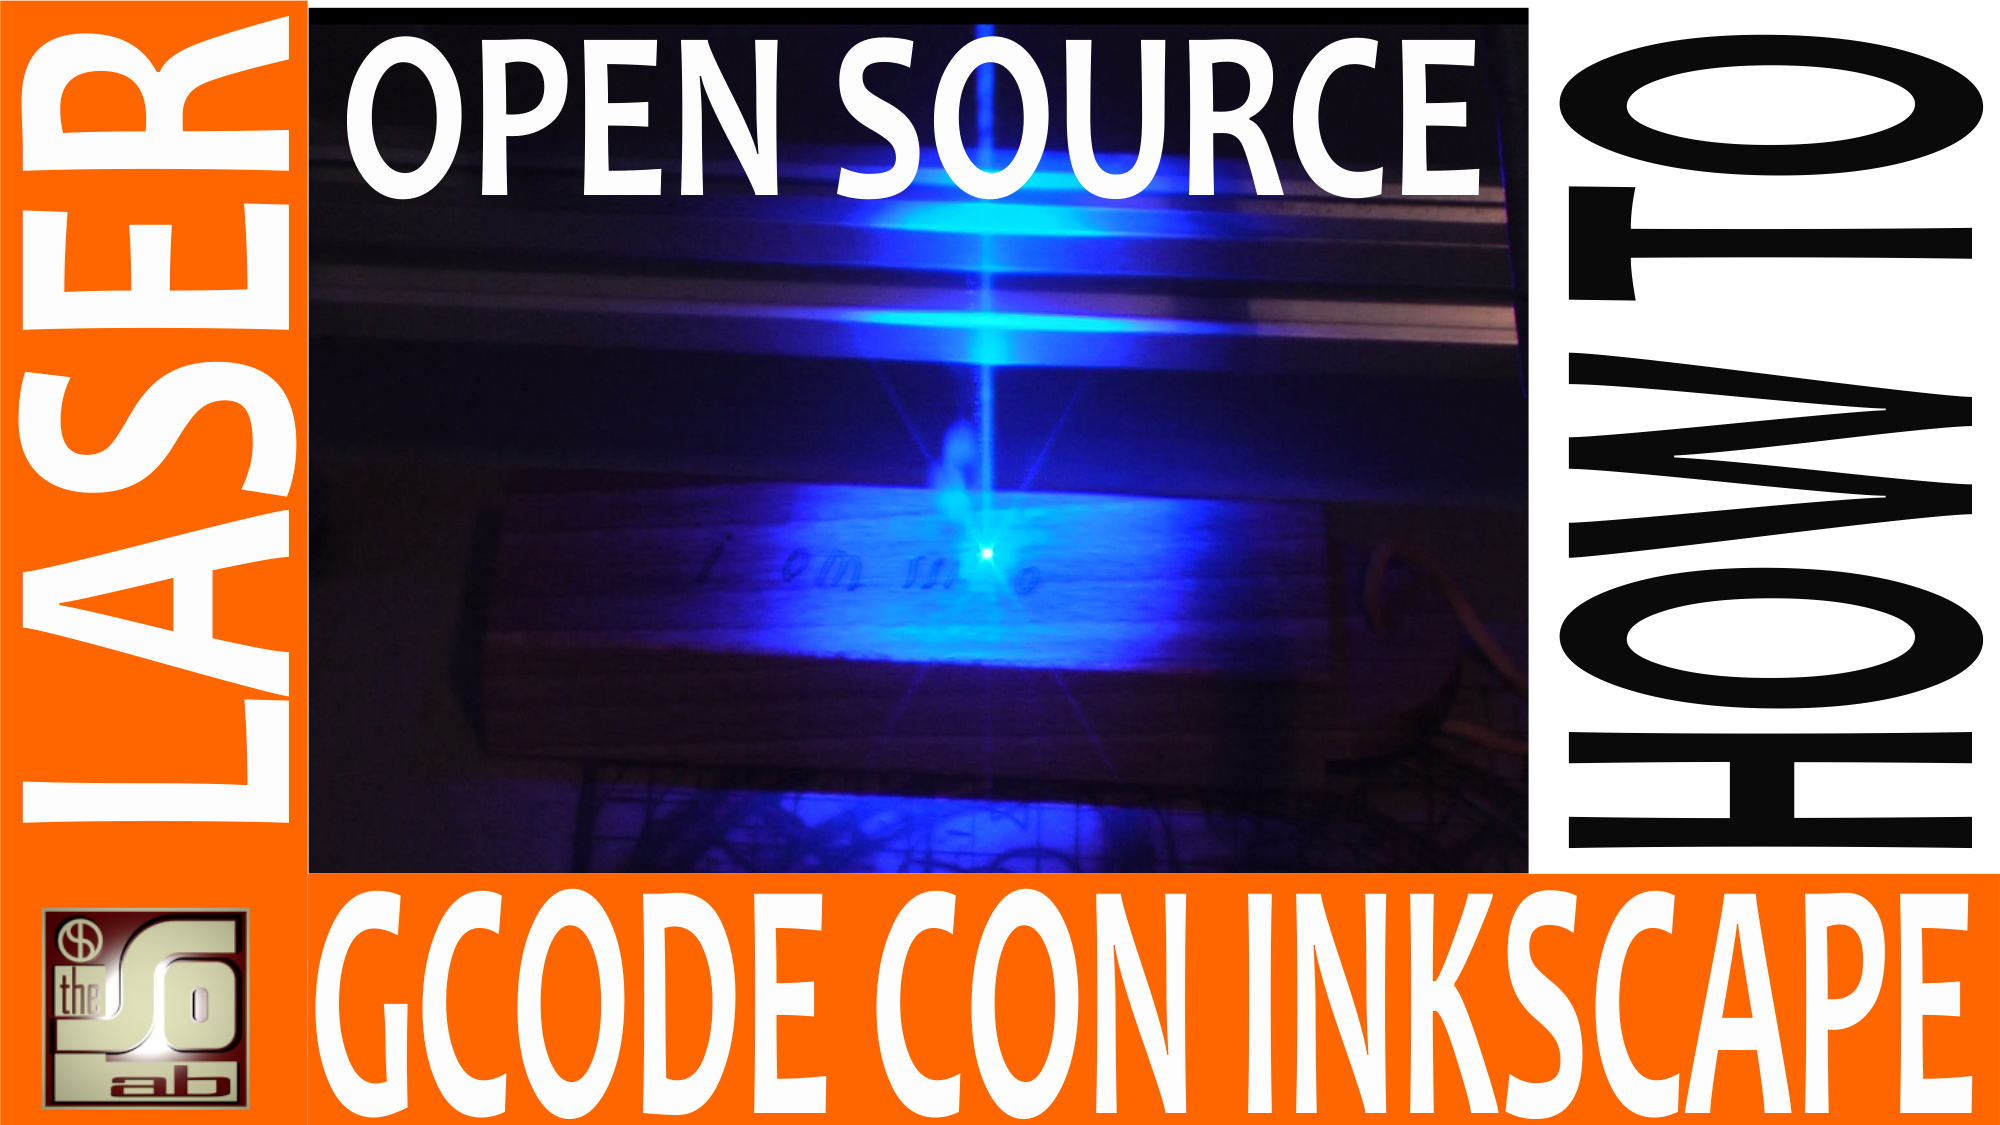 Tutorial Inkscape - Creazione gcode per cnc laser con Inkscape